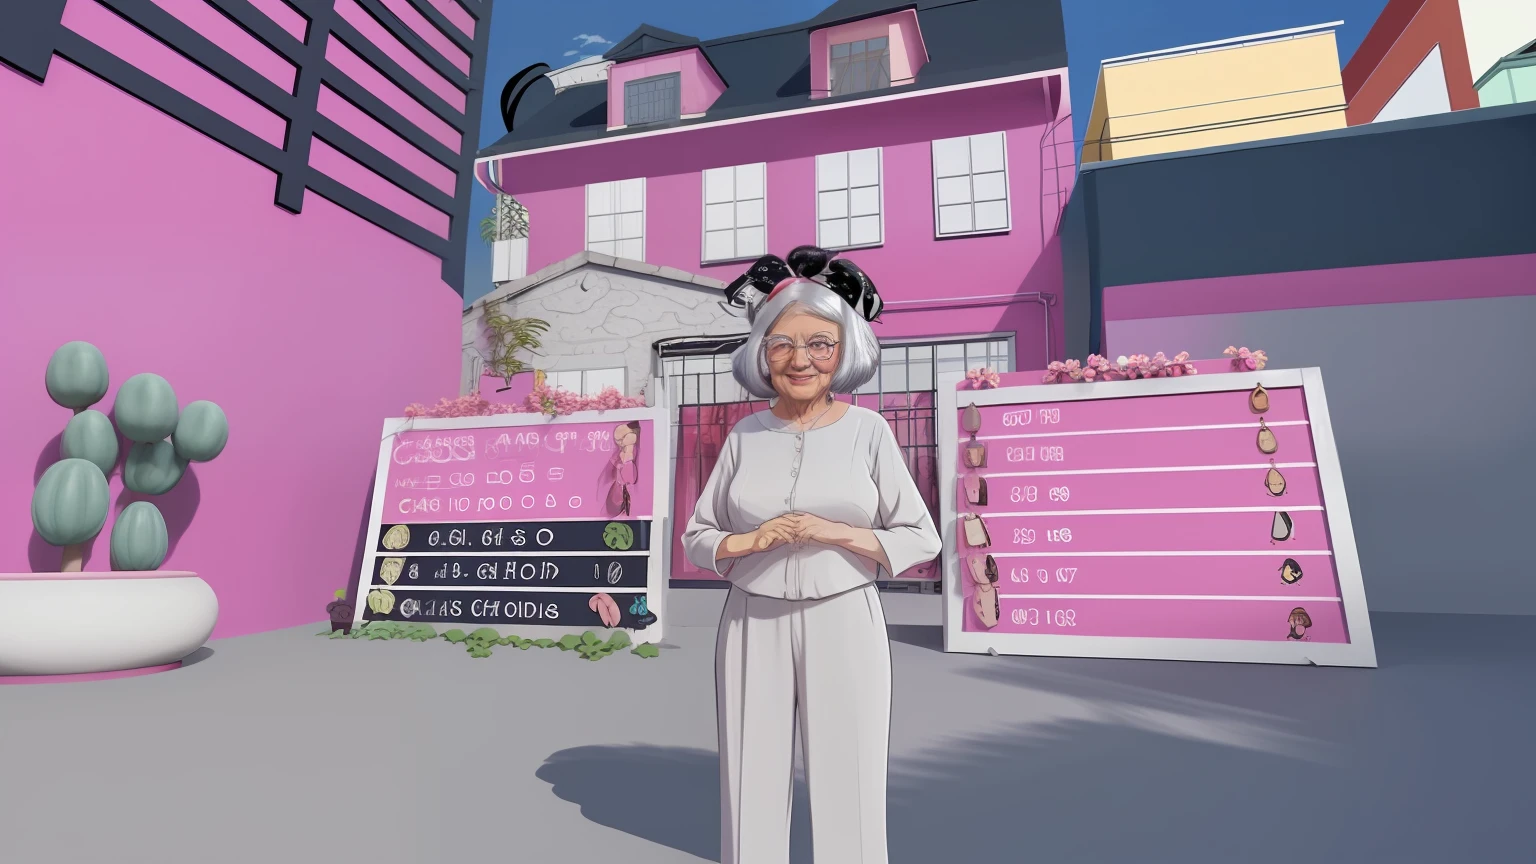 奶奶留着短发, 背景是粉色的房子, 卡通风格, 动漫风格